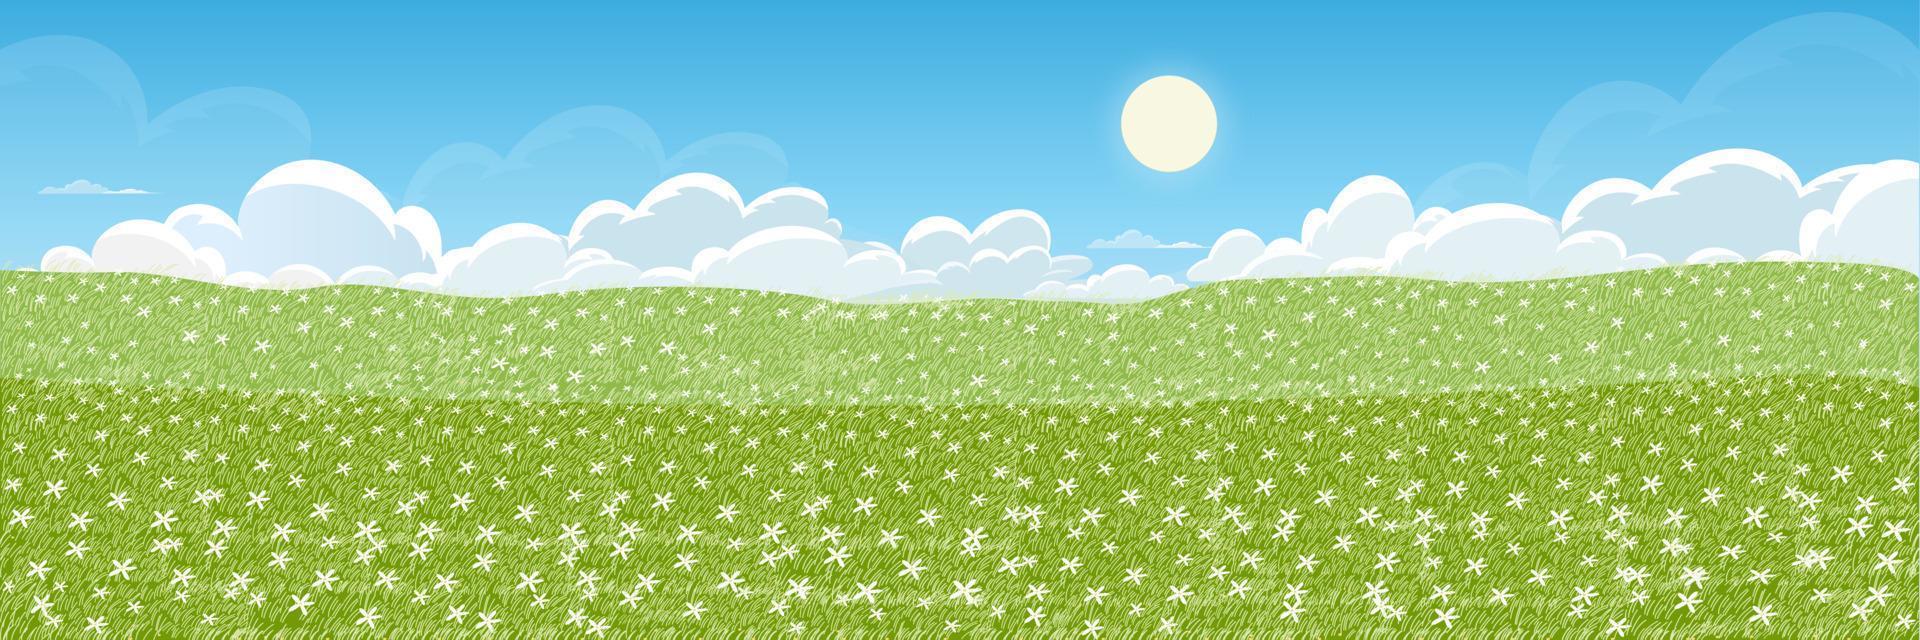 primavera paisaje de margarita granja campo con mullido nube, Dom en azul cielo. amplio panorama ver en verano con salvaje flor en verde prado en colina.vector linda dibujos animados para Pascua de Resurrección bandera vector